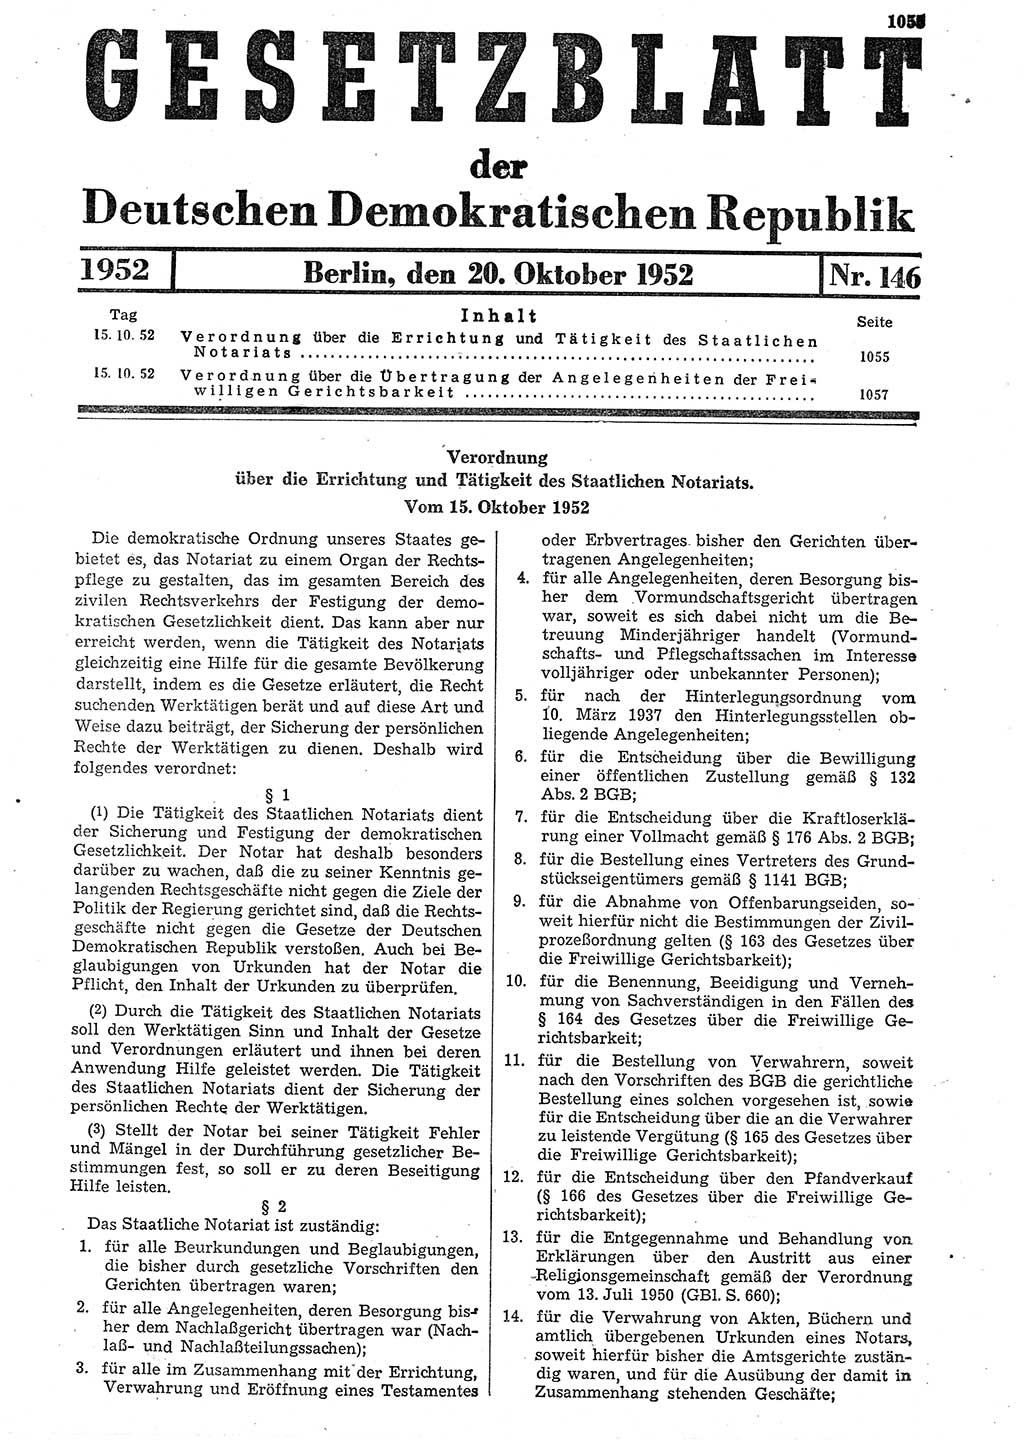 Gesetzblatt (GBl.) der Deutschen Demokratischen Republik (DDR) 1952, Seite 1055 (GBl. DDR 1952, S. 1055)